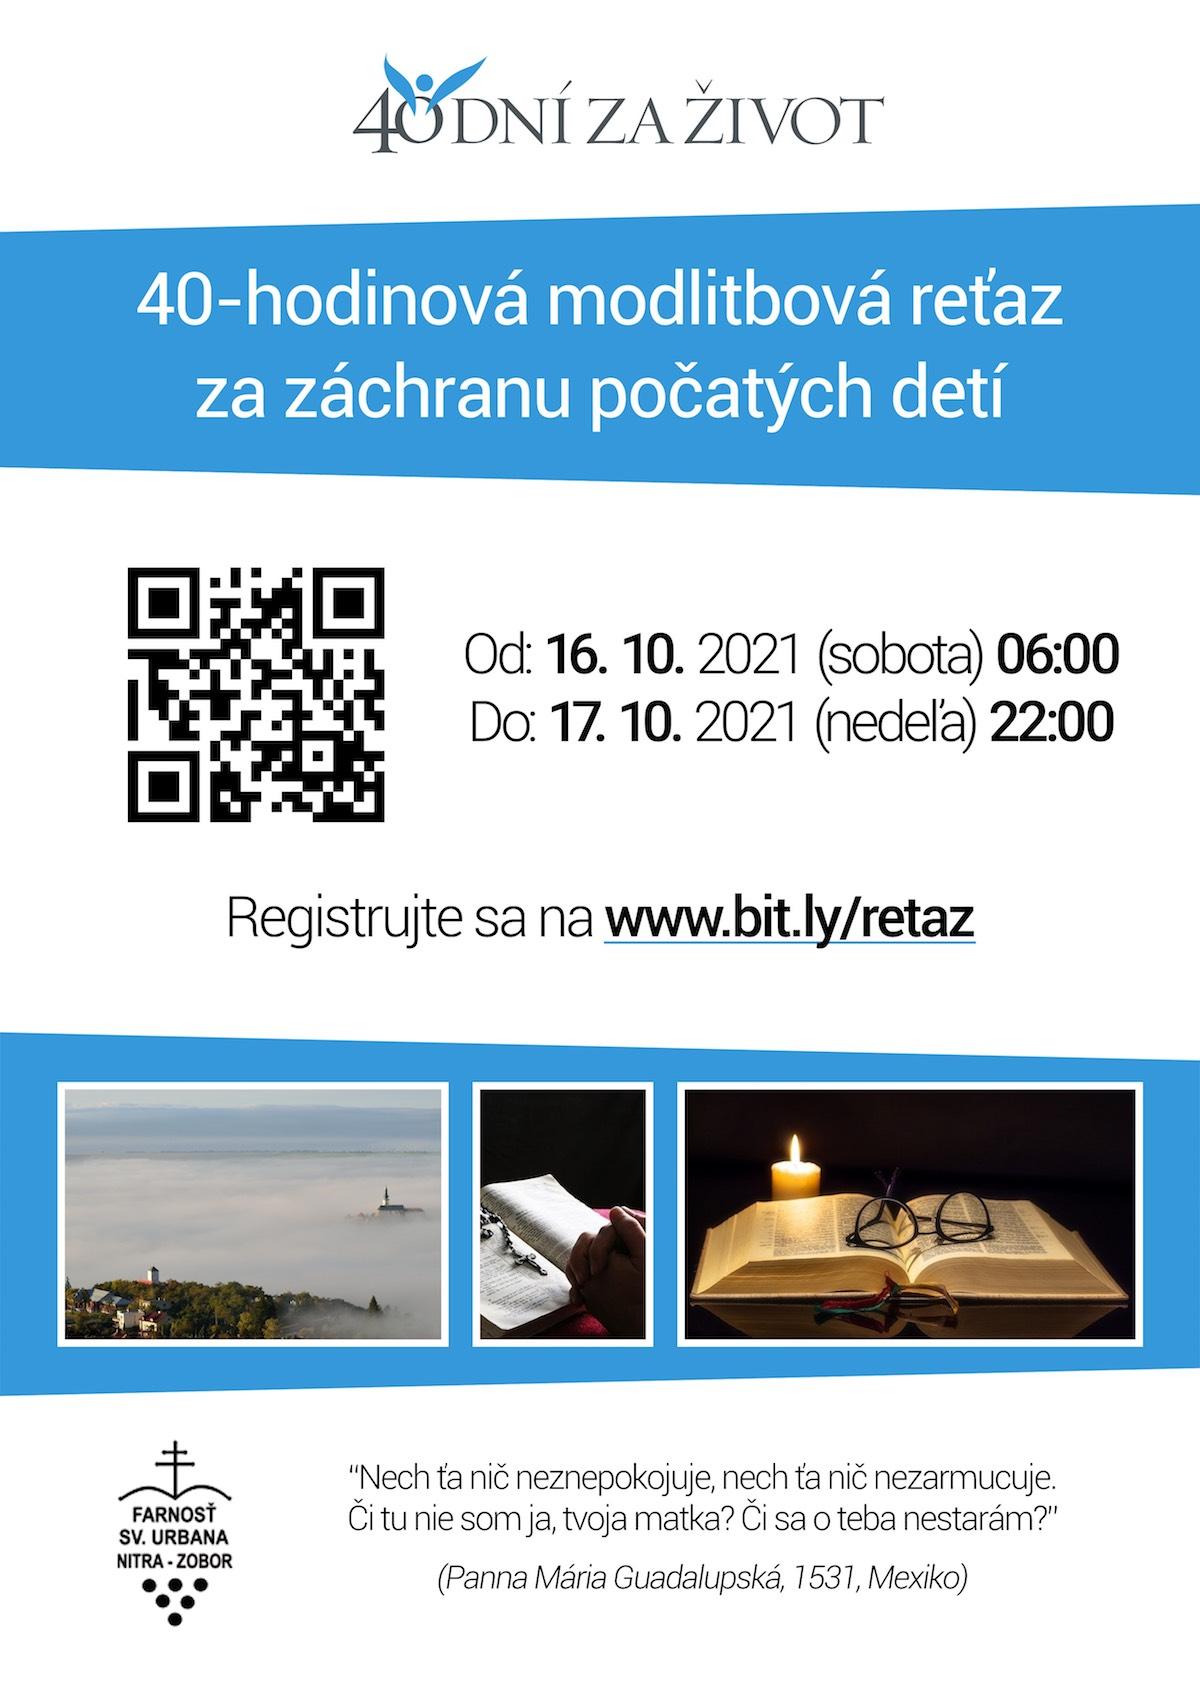 Bratislava, 40 dni za zivot, plagat